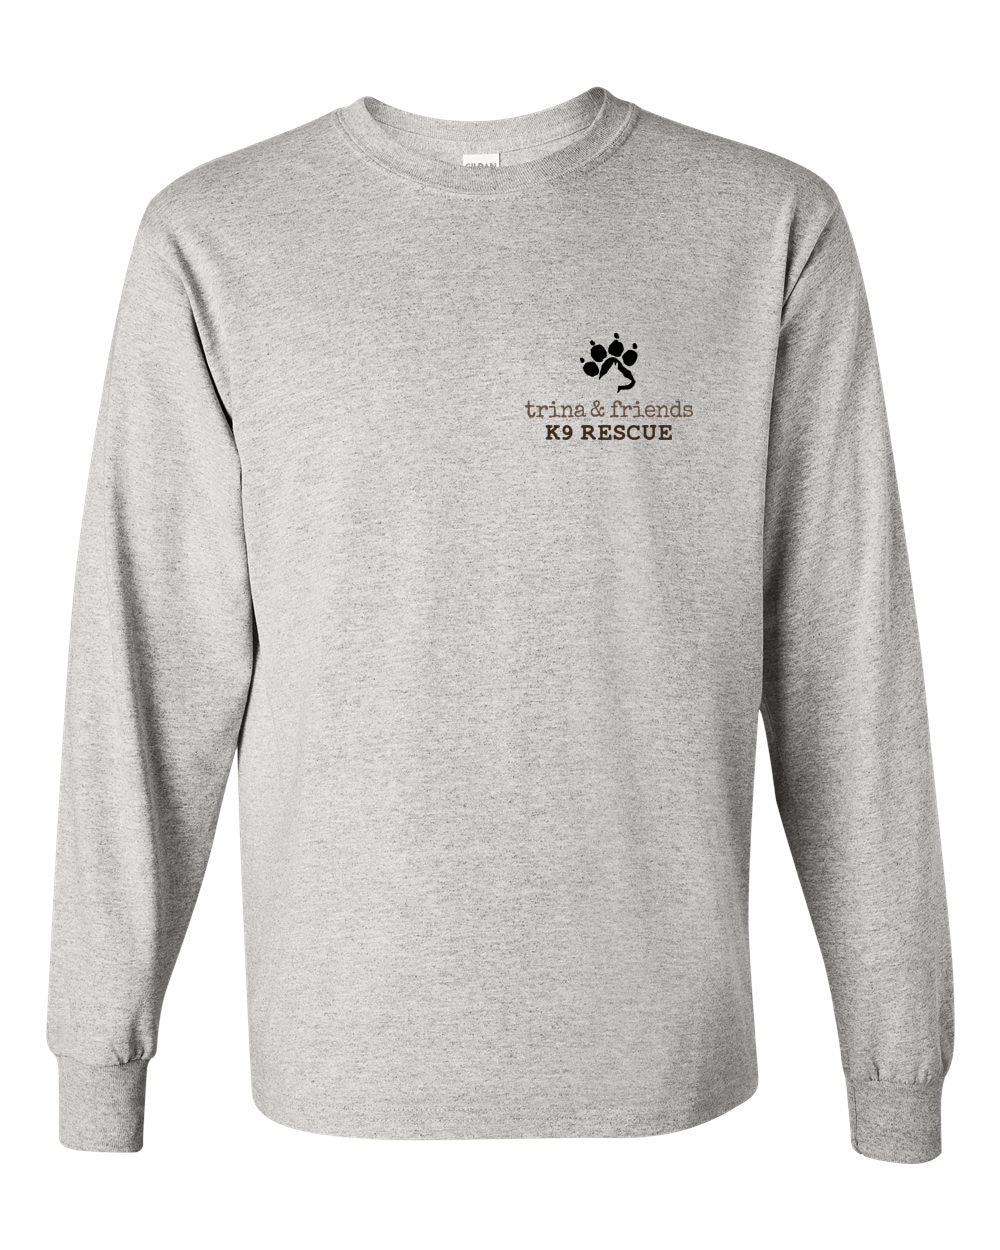 Trina & Friends Design 5 Long Sleeve Shirt